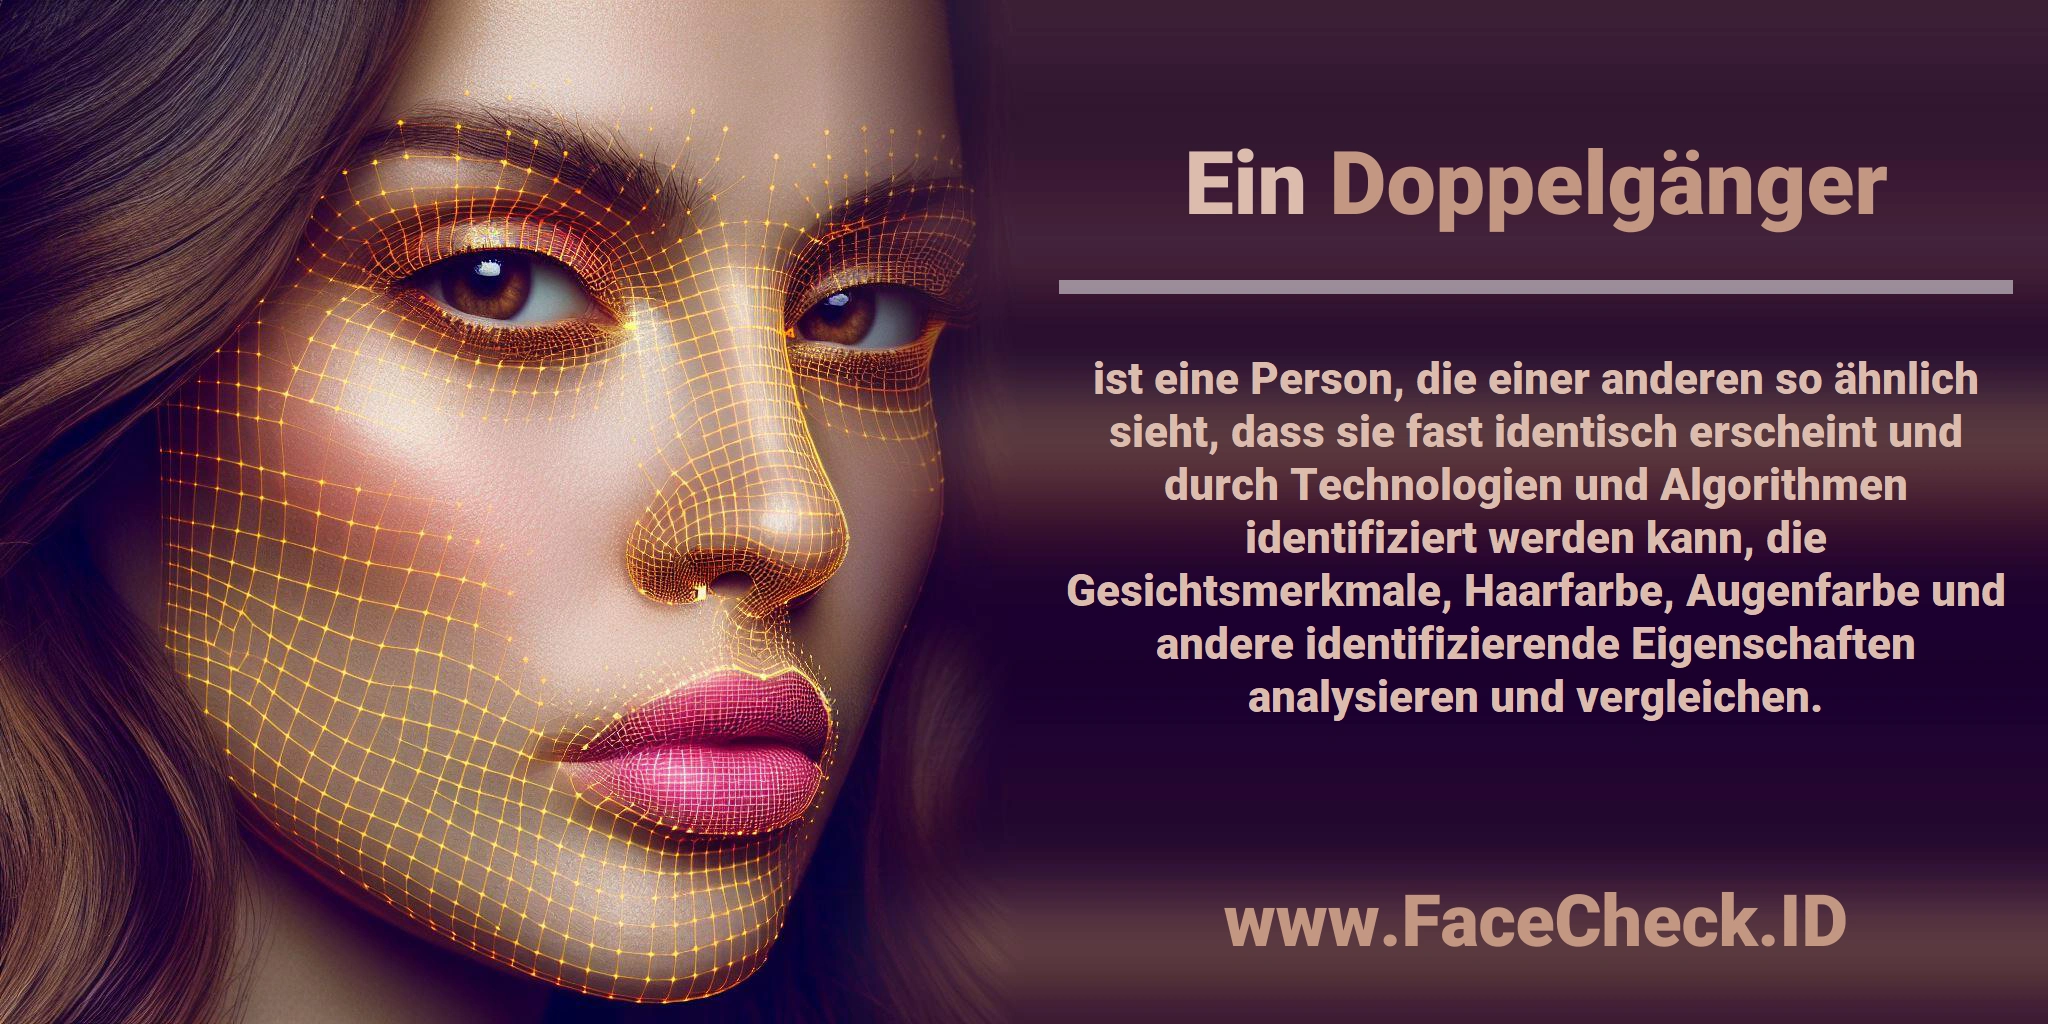 Ein <b>Doppelgänger</b> ist eine Person, die einer anderen so ähnlich sieht, dass sie fast identisch erscheint und durch Technologien und Algorithmen identifiziert werden kann, die Gesichtsmerkmale, Haarfarbe, Augenfarbe und andere identifizierende Eigenschaften analysieren und vergleichen.